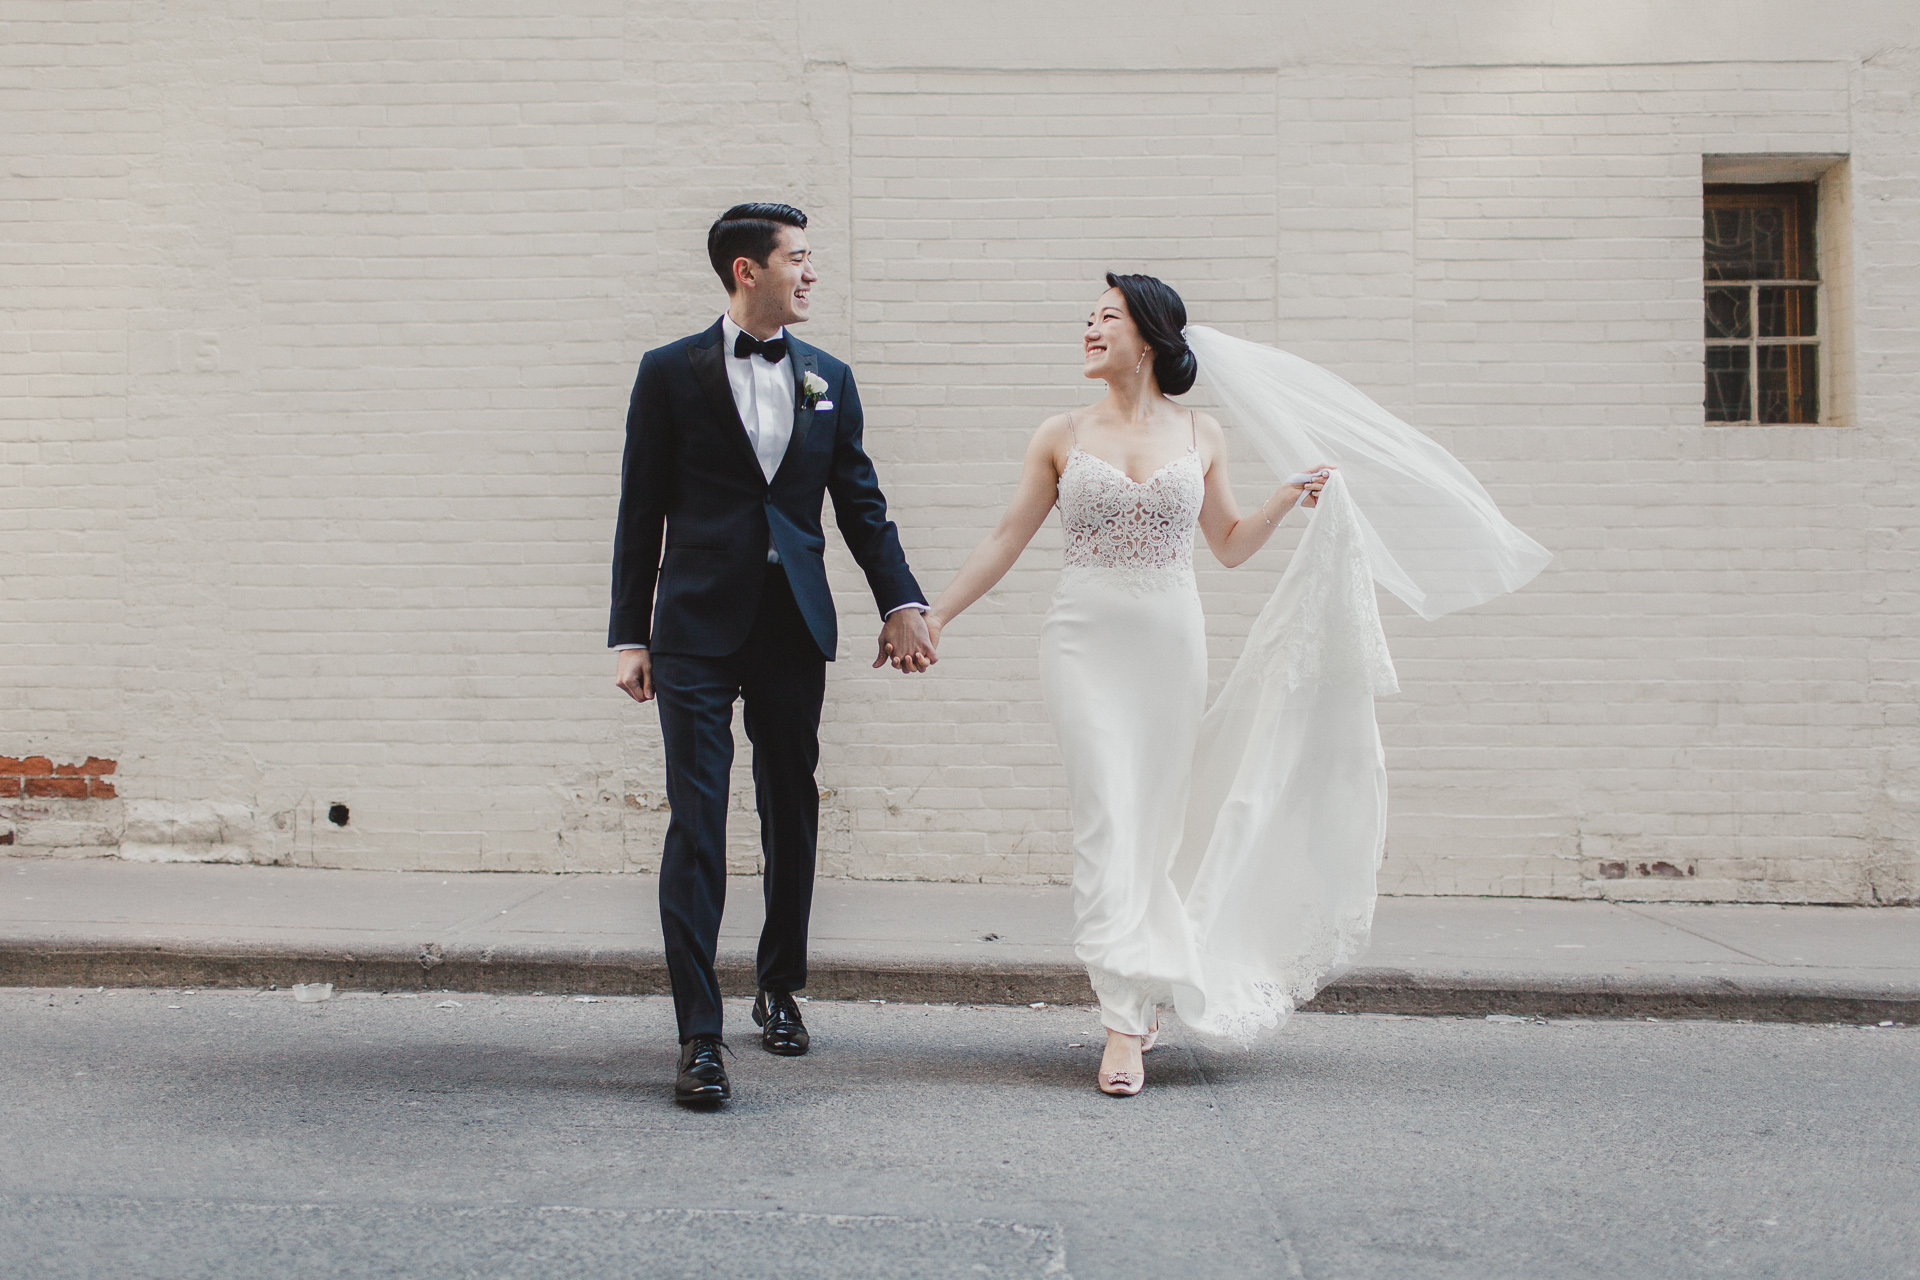 Wedding Photo by Top Toronto Wedding Photographer Avangard Photography